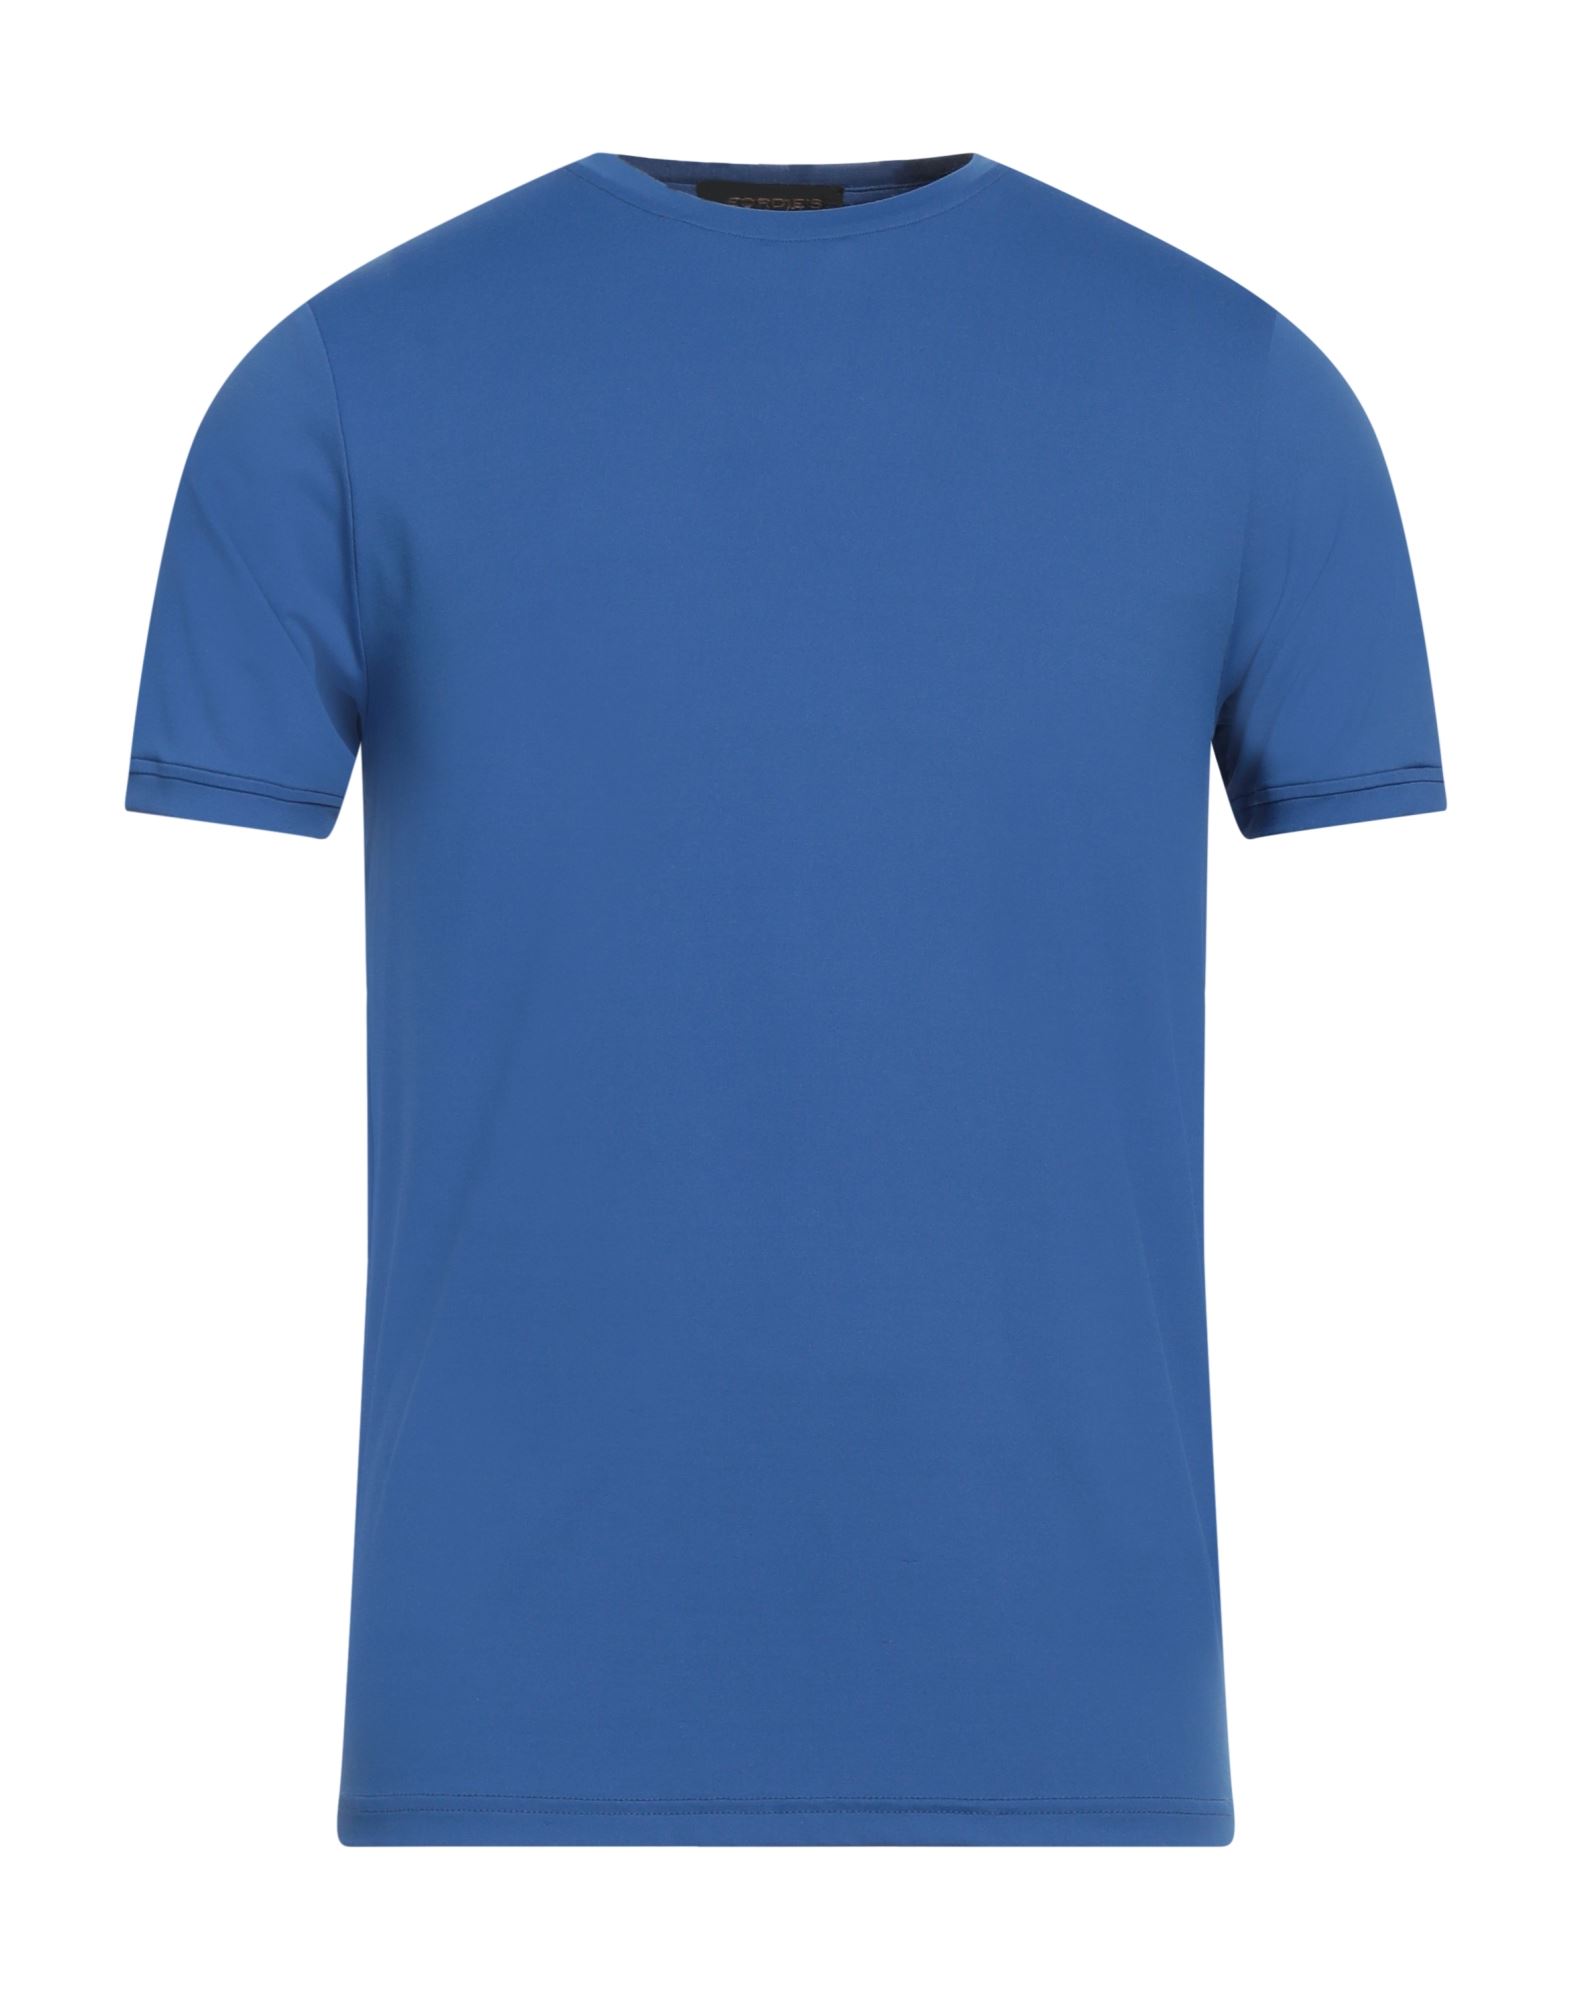 JEORDIE'S T-shirts Herren Blau von JEORDIE'S